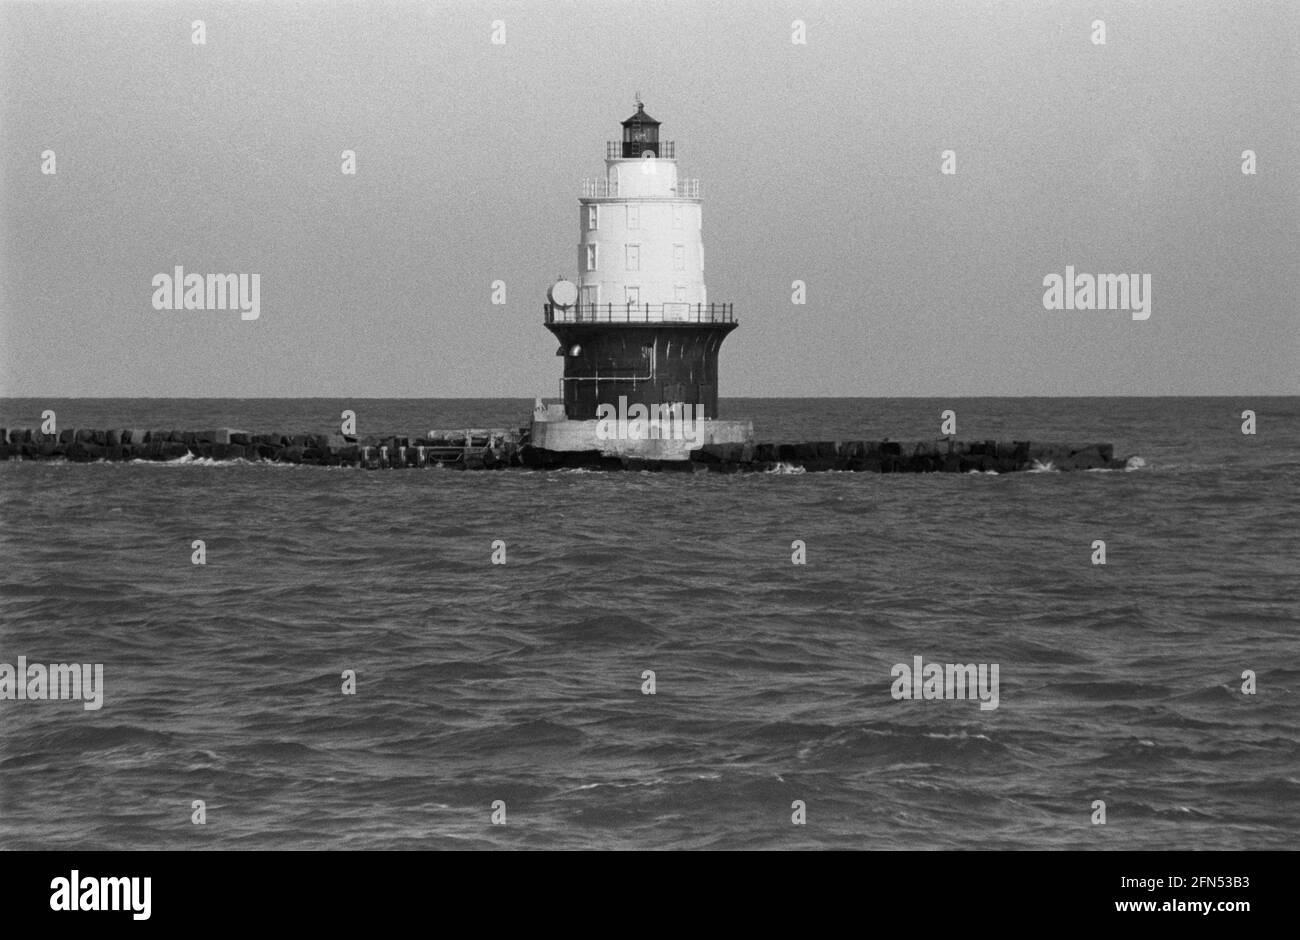 Porto del Faro del Rifugio, Delaware Bay Breakwater (Cape May, NJ a Lewes, DE Ferry), novembre 1992. Parte di una serie di 35 fari della costa orientale americana fotografati tra novembre 1992 e settembre 1993. Foto Stock